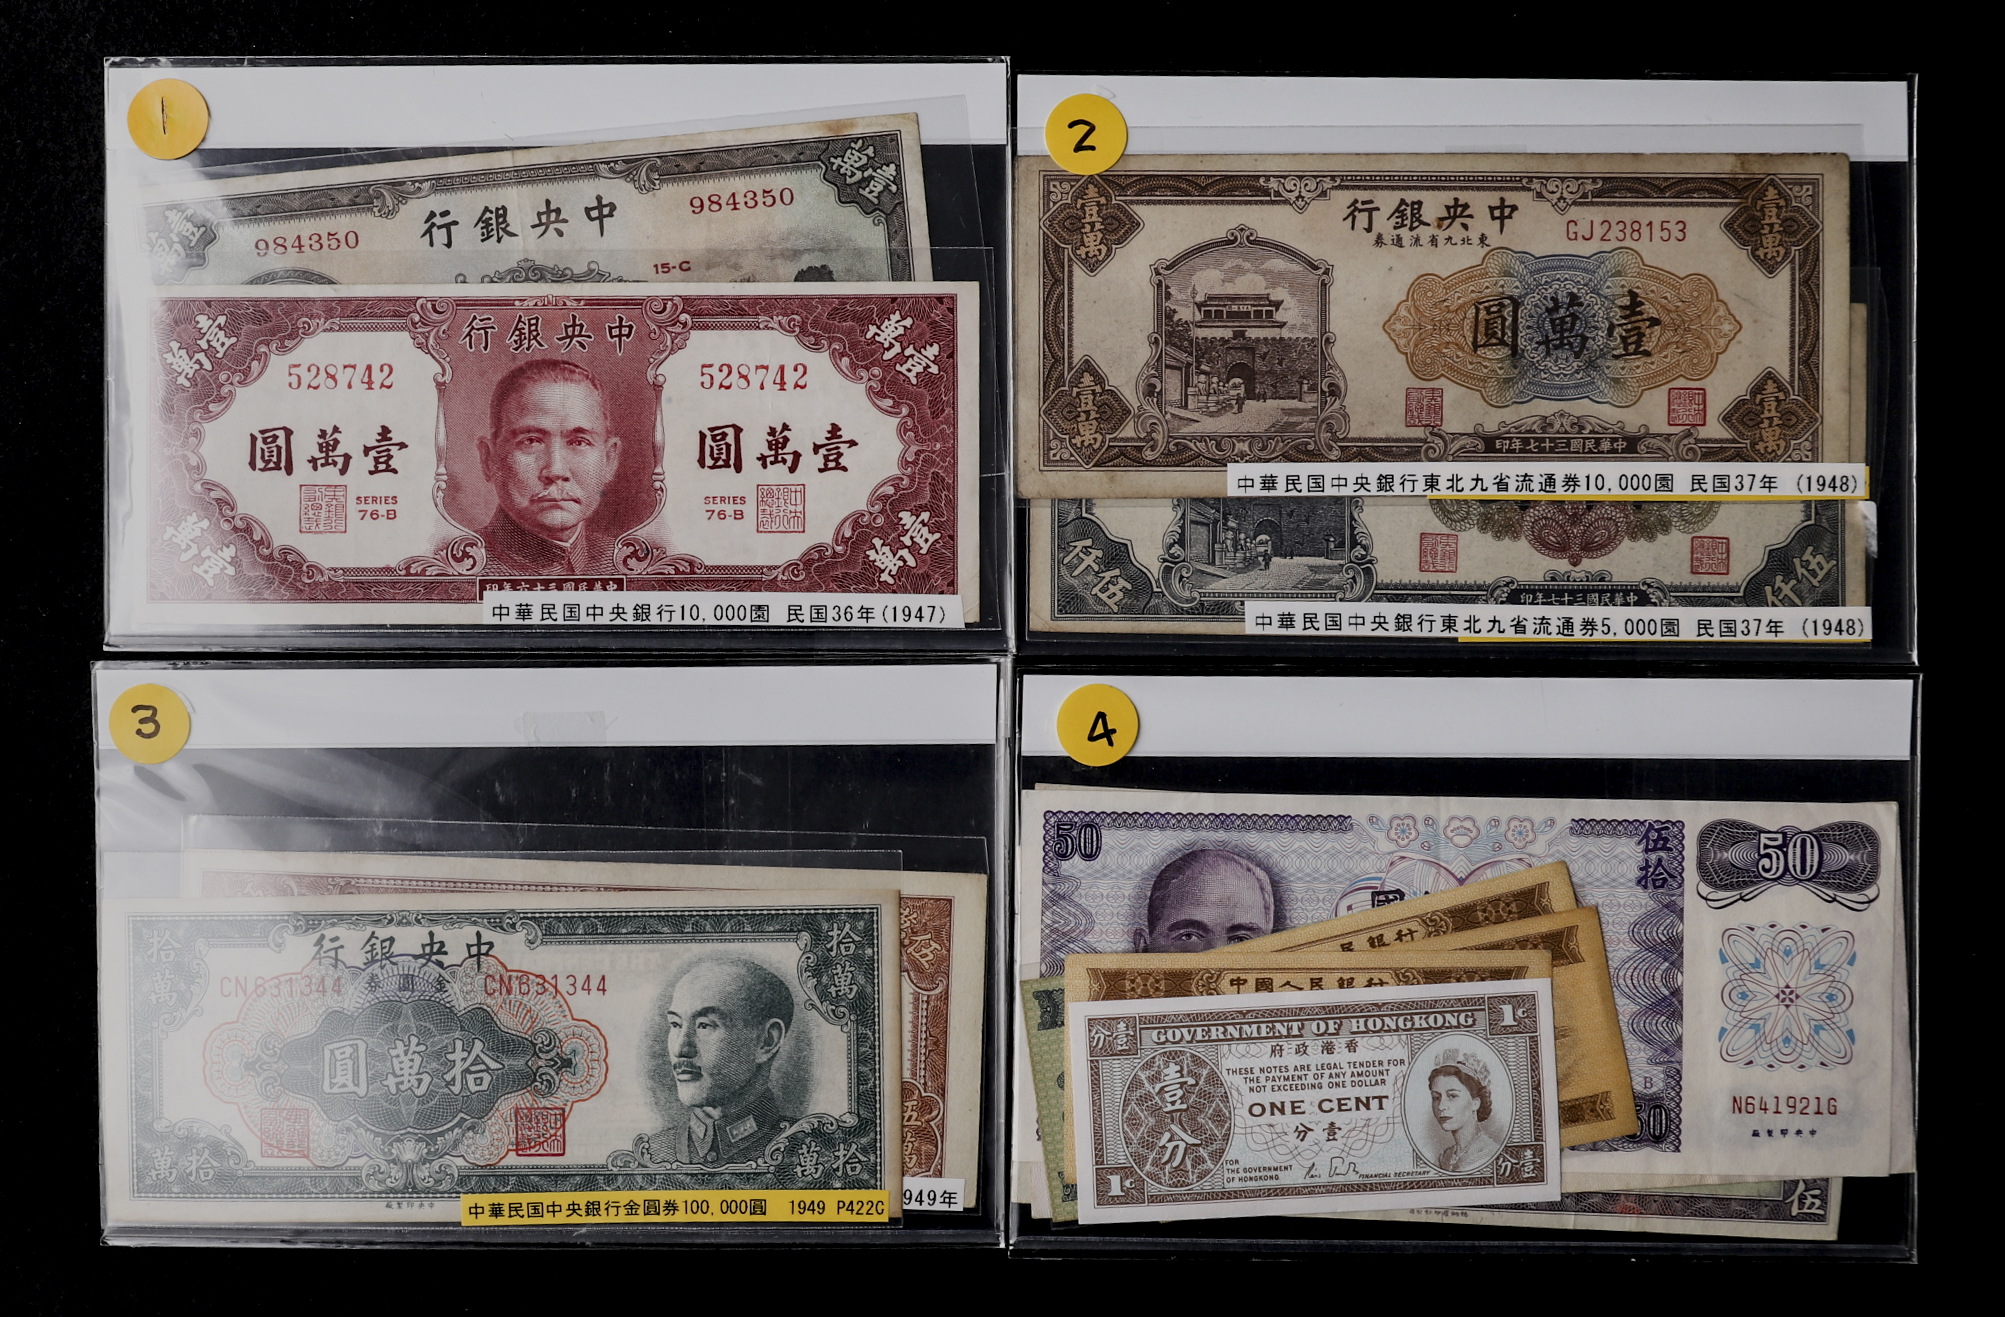 貨幣博物館 | 中華民国中央銀行券 壹萬圓 民国36年(1947)×2 - www.pranhosp.com